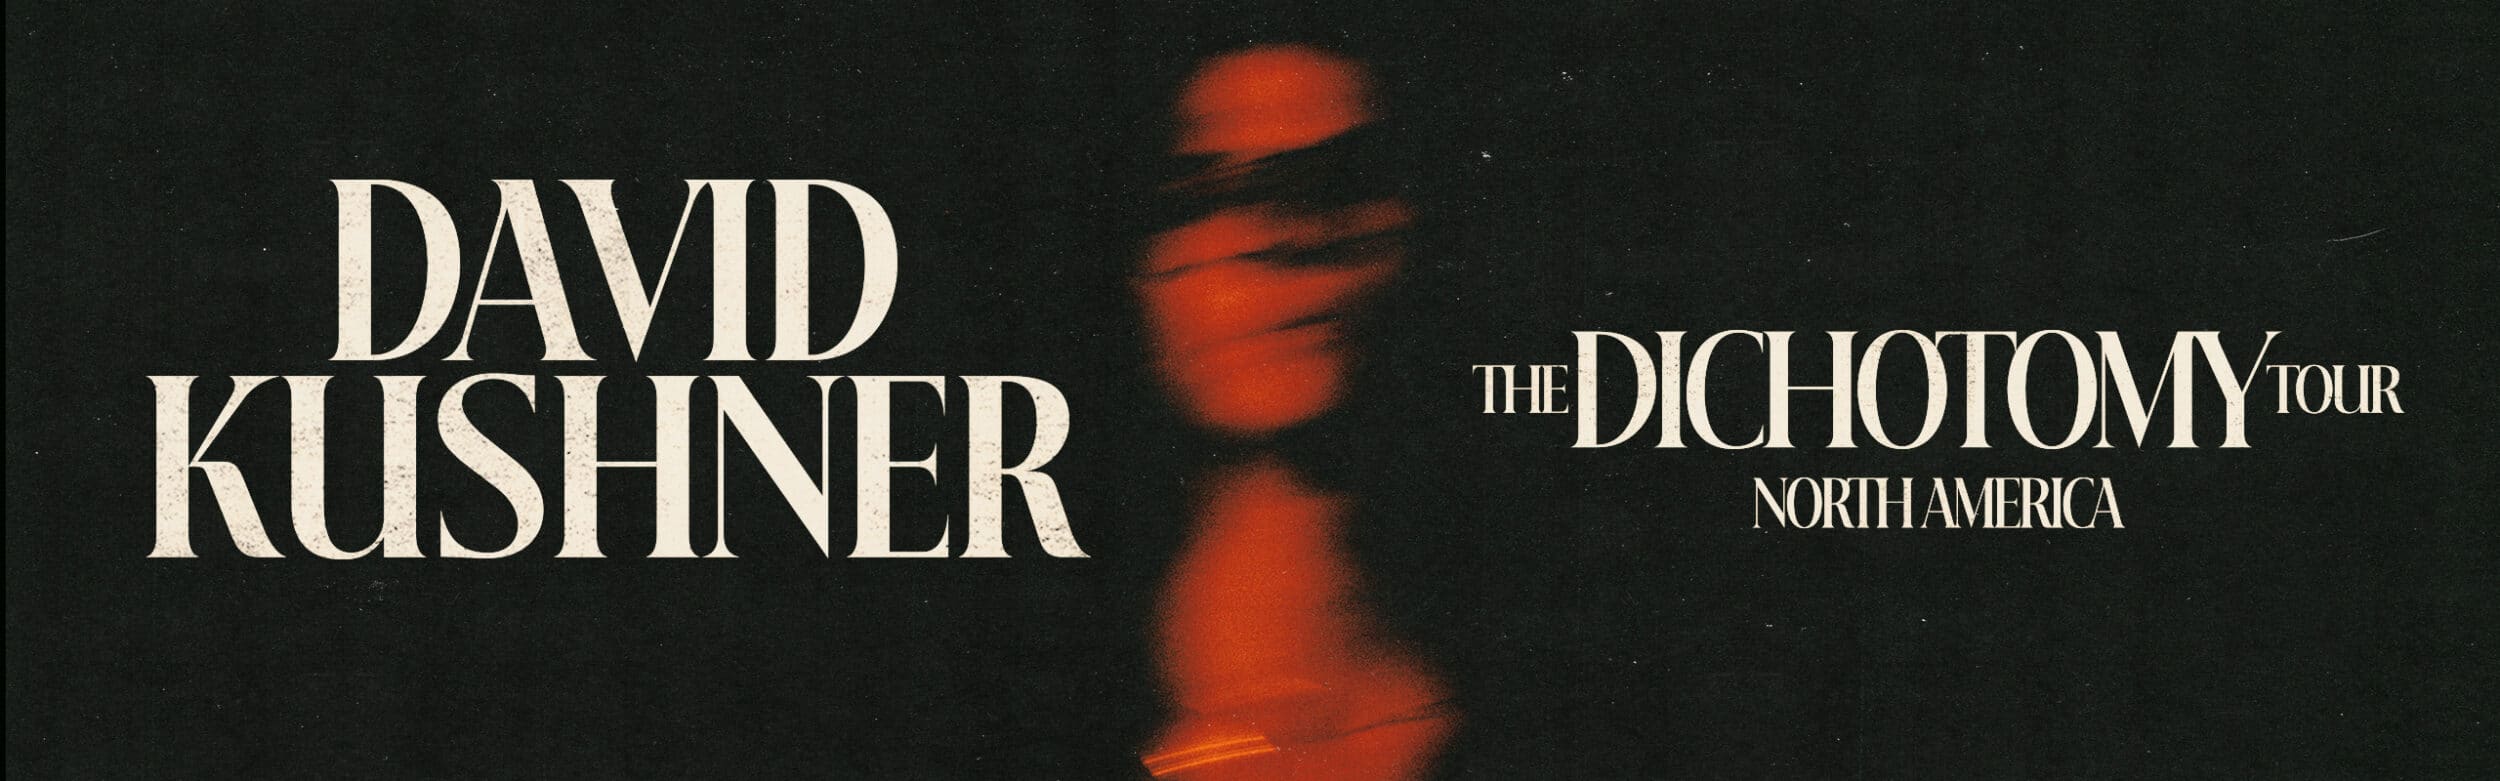 David Kushner – The Dichotomy Tour